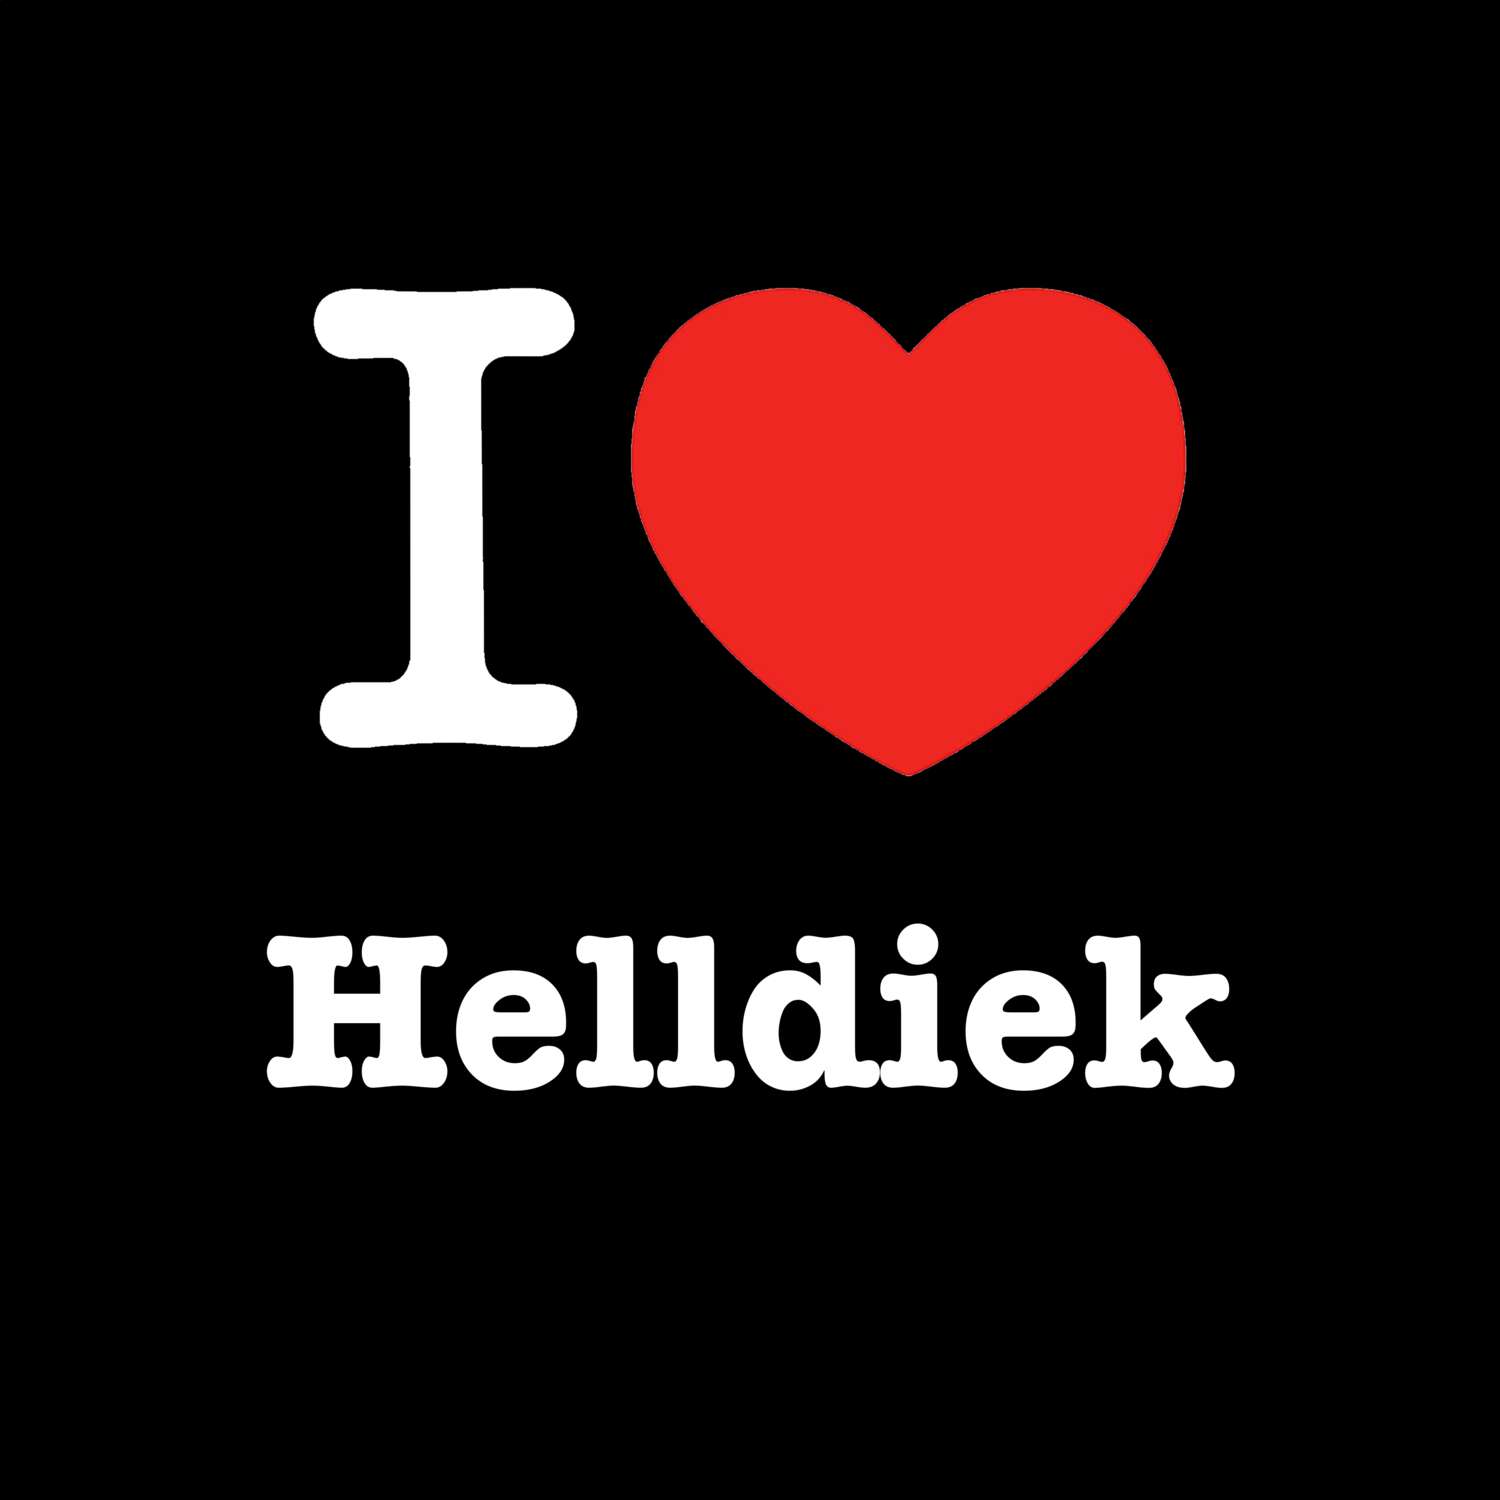 Helldiek T-Shirt »I love«